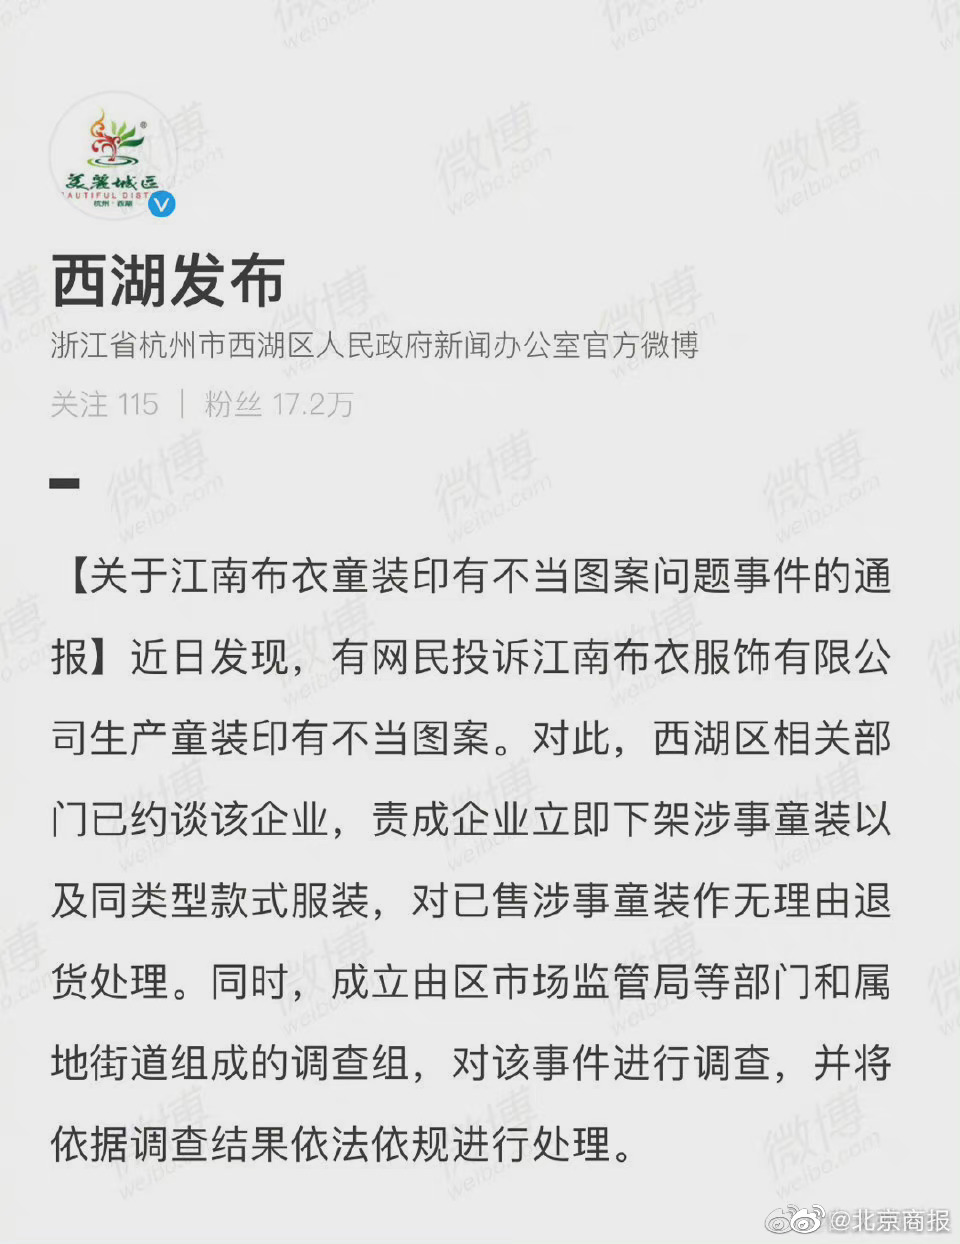 杭州官方约谈江南布衣 将对童装印有不当图案问题展开调查